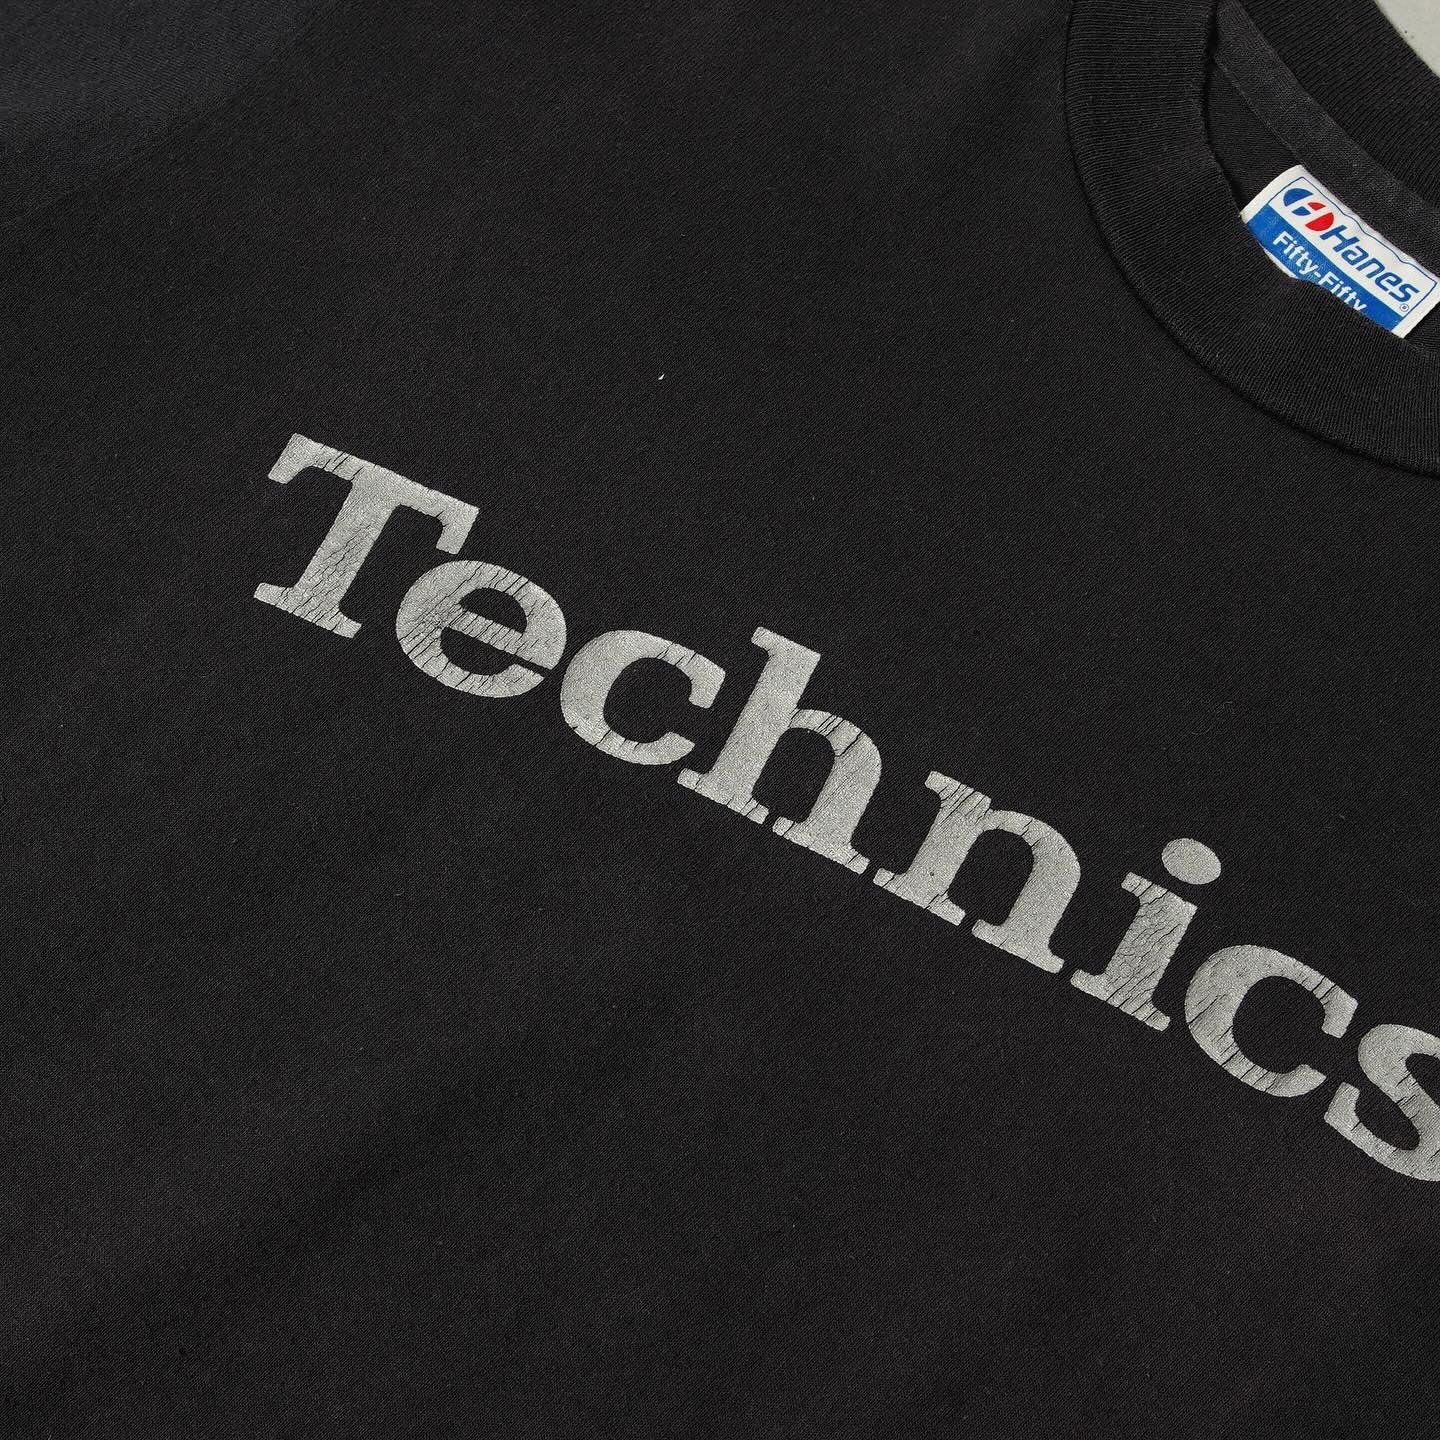 Technics 80’s Tee